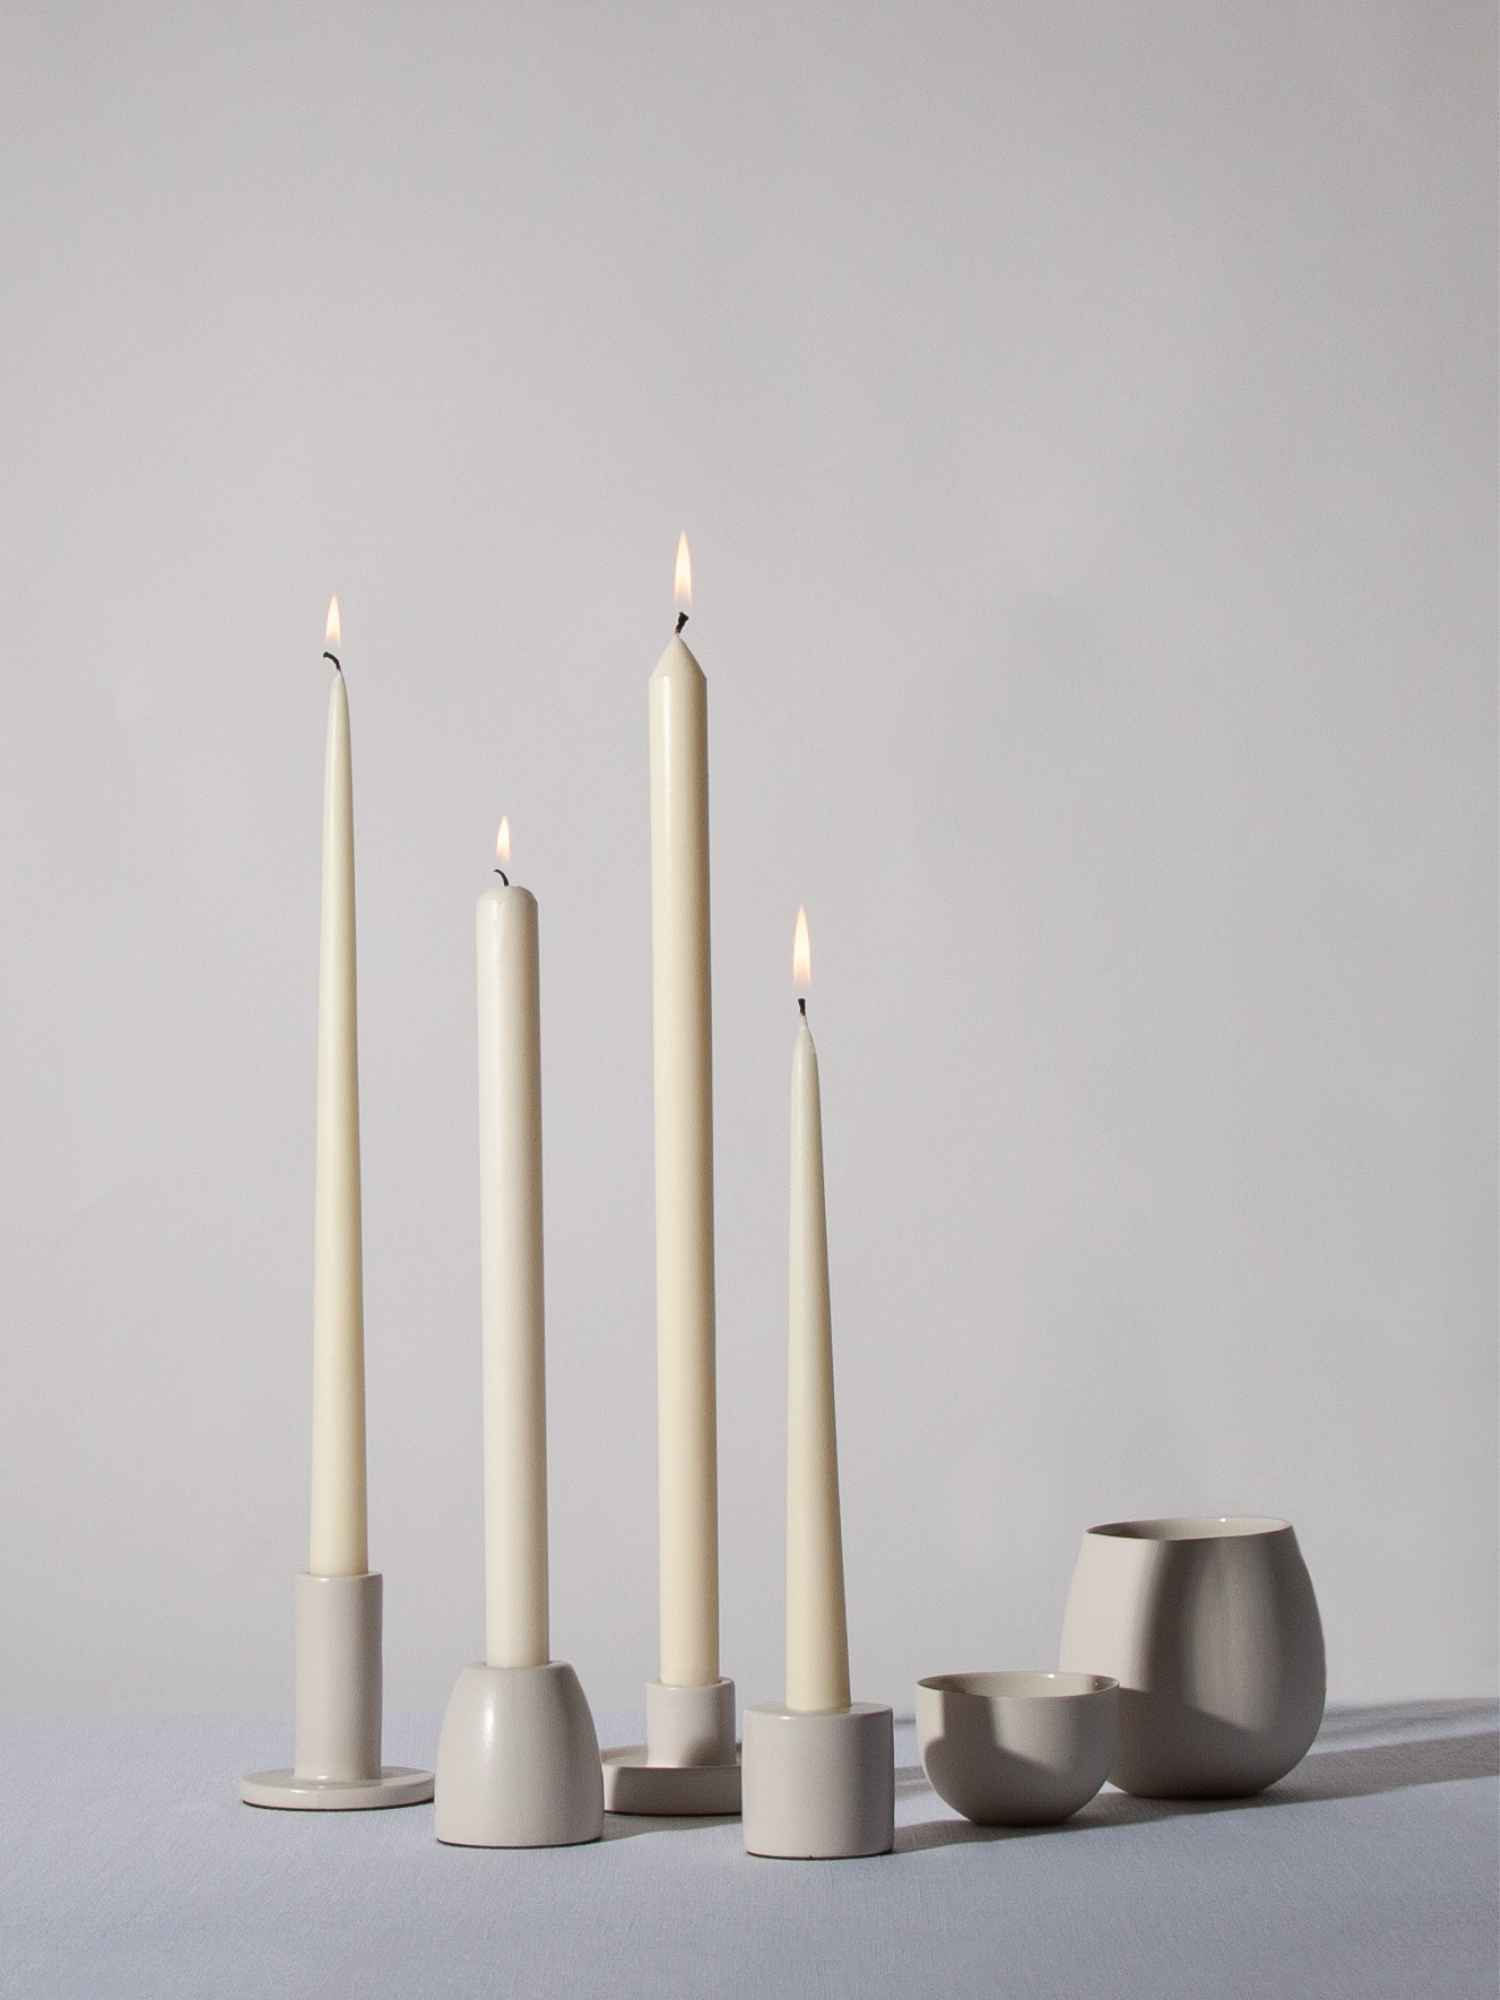 Hueseeka Shop Candles Australia | Wholesale Candle Suppliers